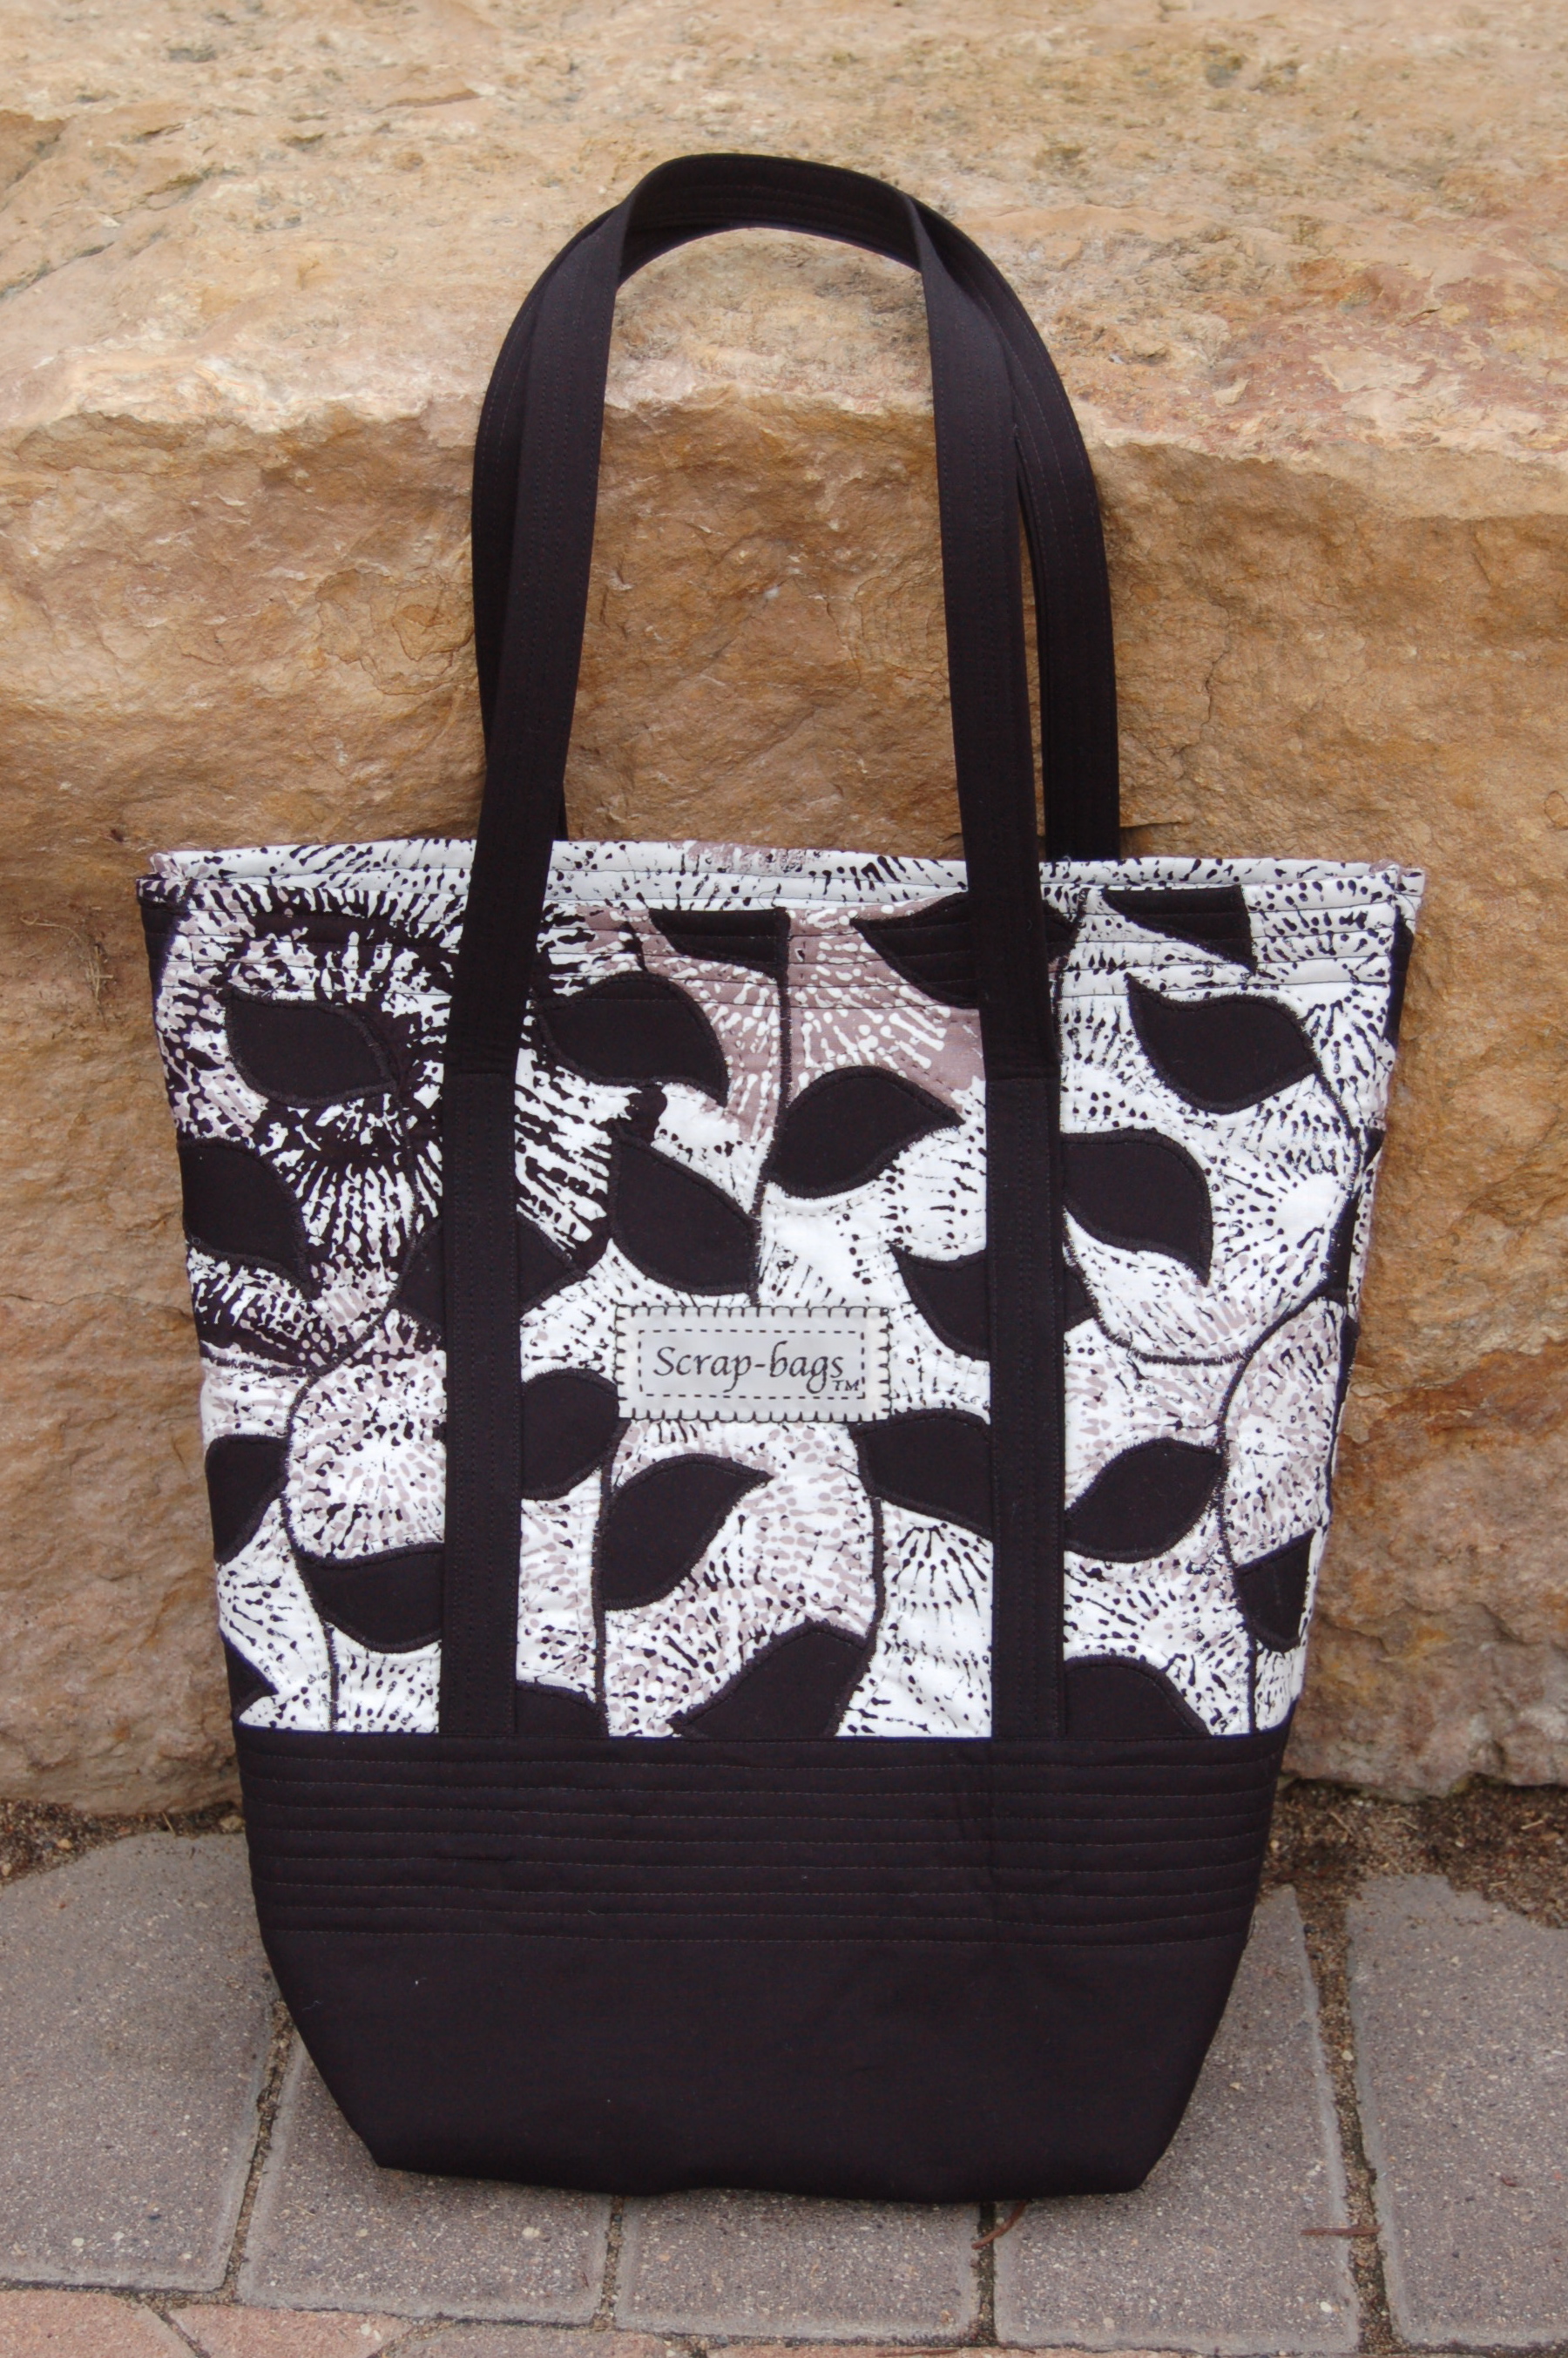 Scrap-bags Sewing Patterns - Retail — Jamie Kalvestran Design LLC